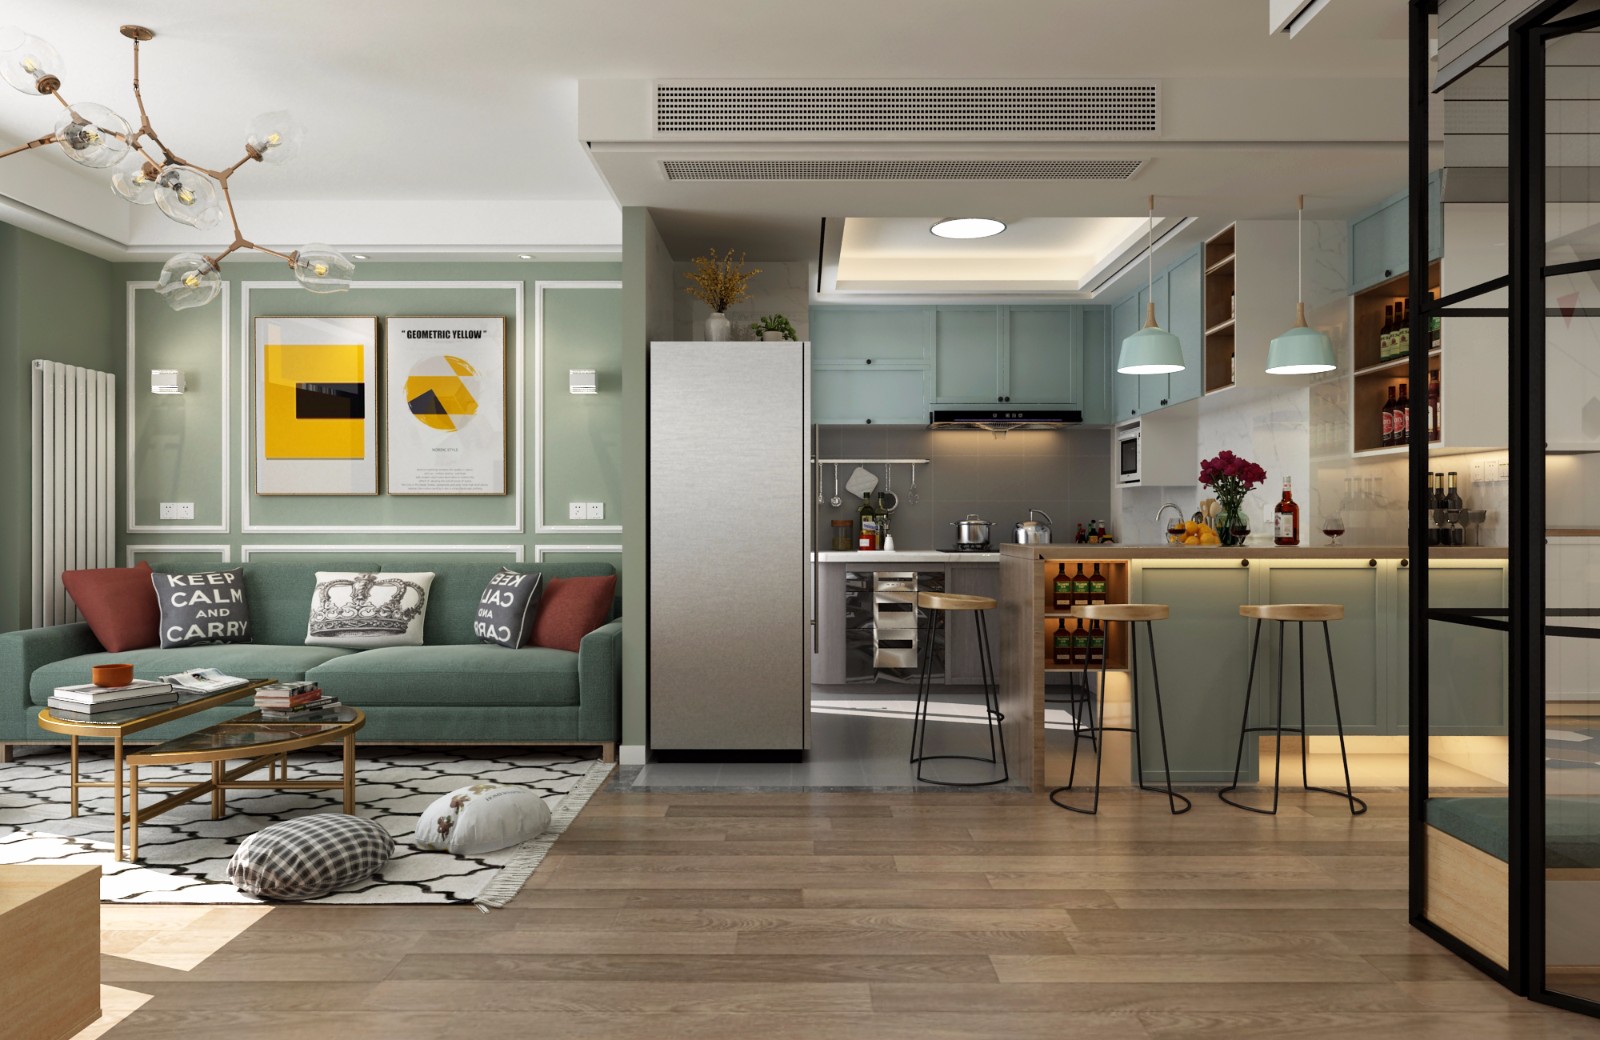 主色调是灰色的开放式厨房,与客厅相                    的机会.